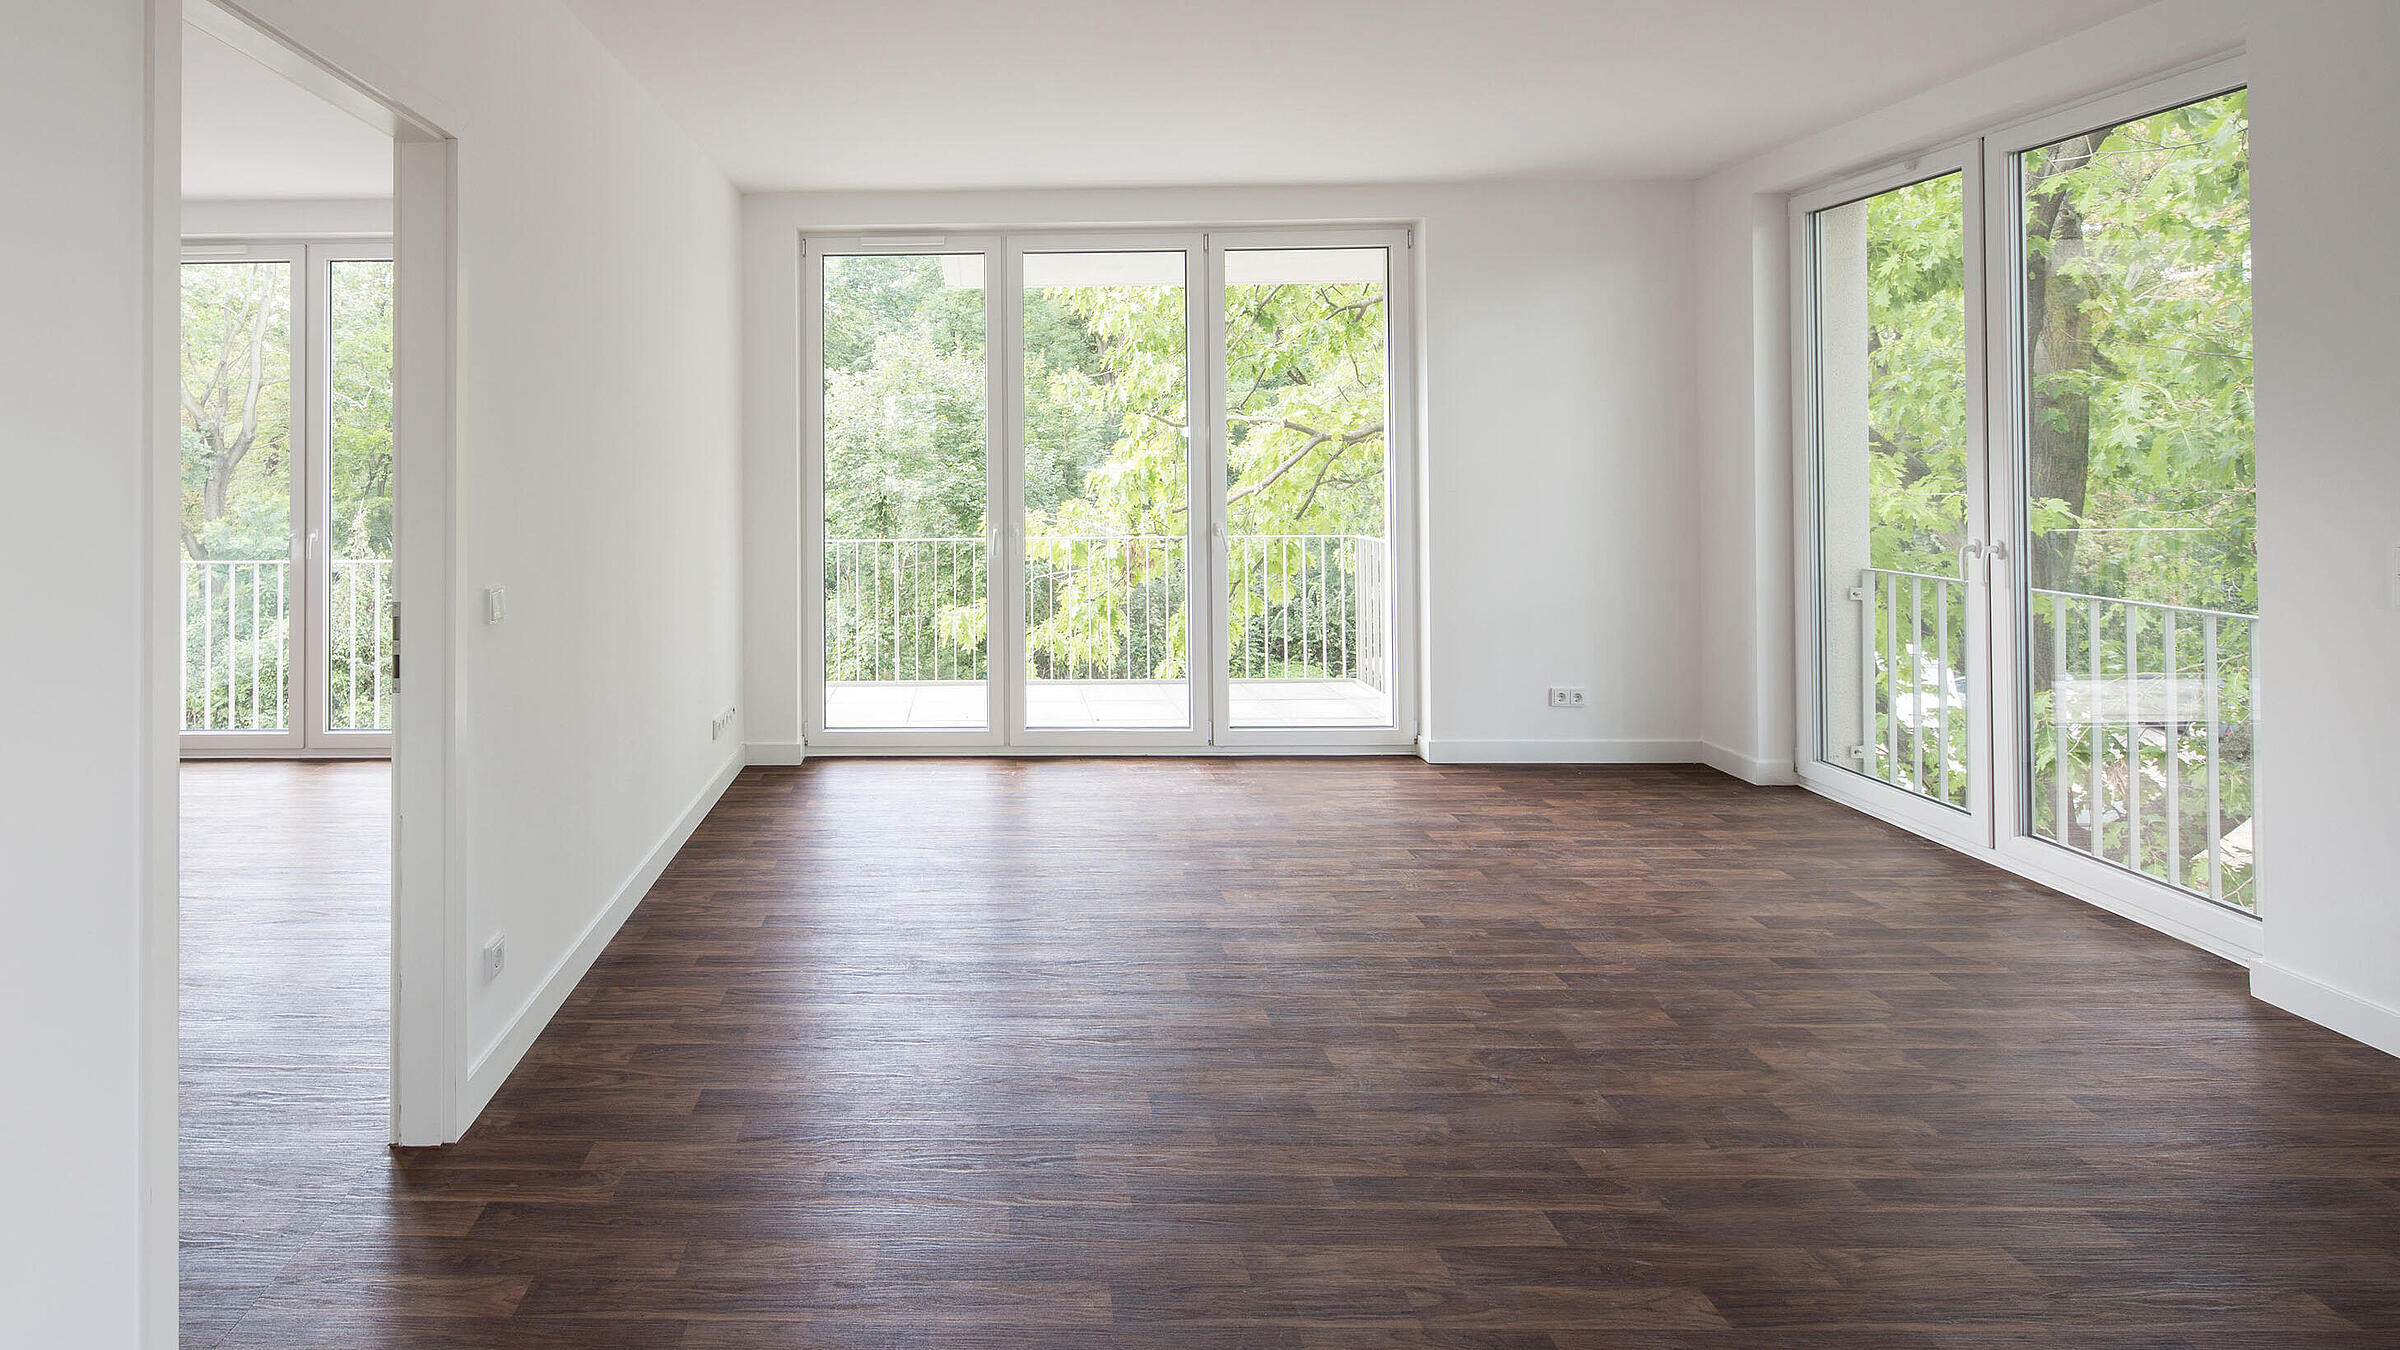 Innenaufnahme zeigt ein leeres Zimmer mit bodentiefen Fenstern, einem Fußboden in Holzoptik und Balkon.